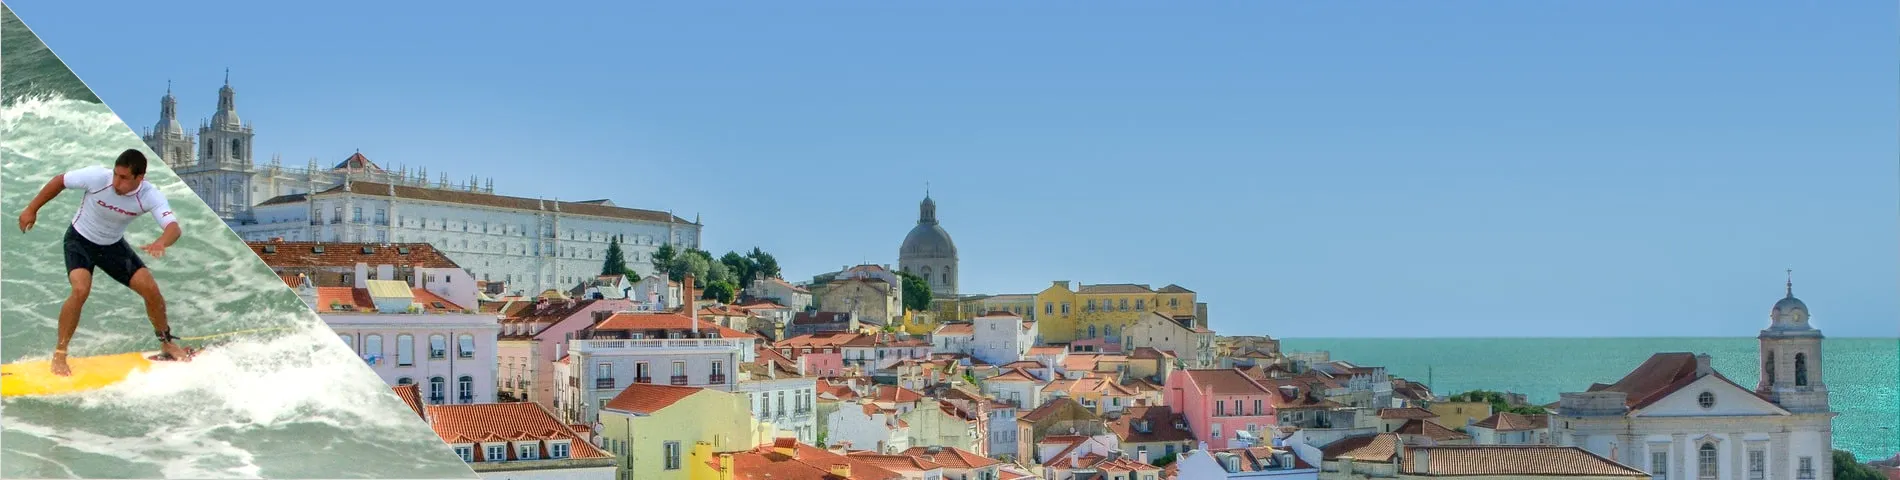 Lisbona - Portoghese & Surf